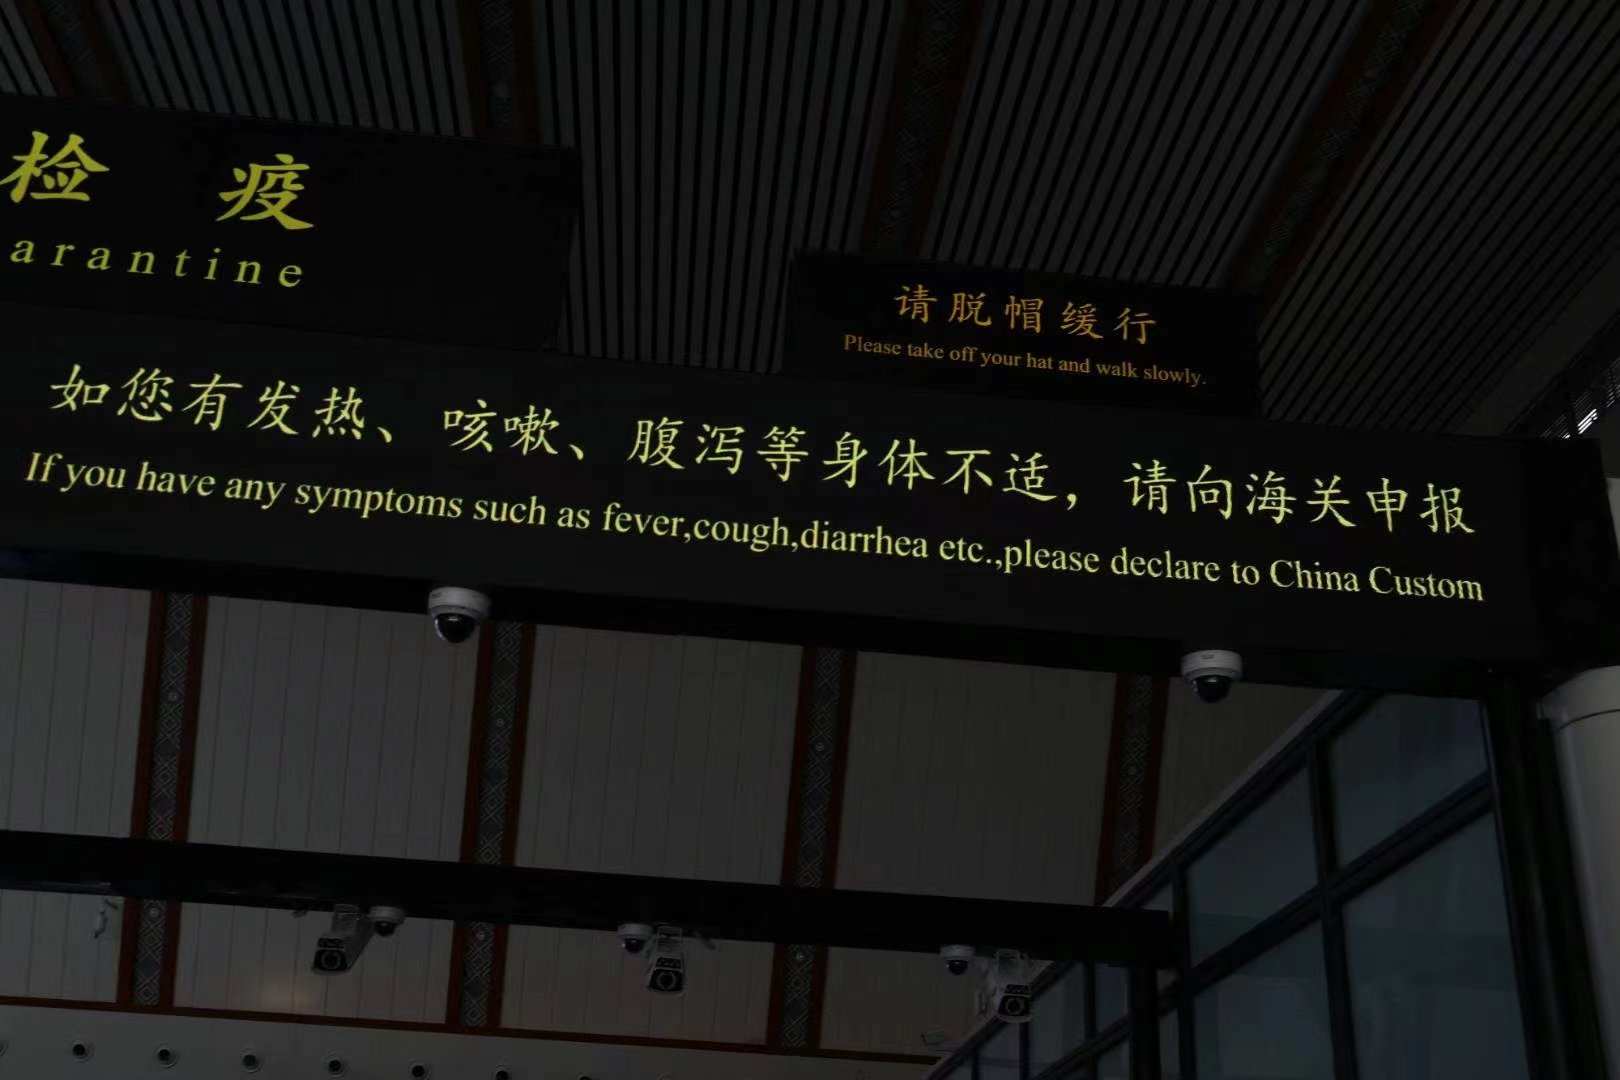 中國海關發佈的疫病申報提示。  新京報記者 戴軒 攝